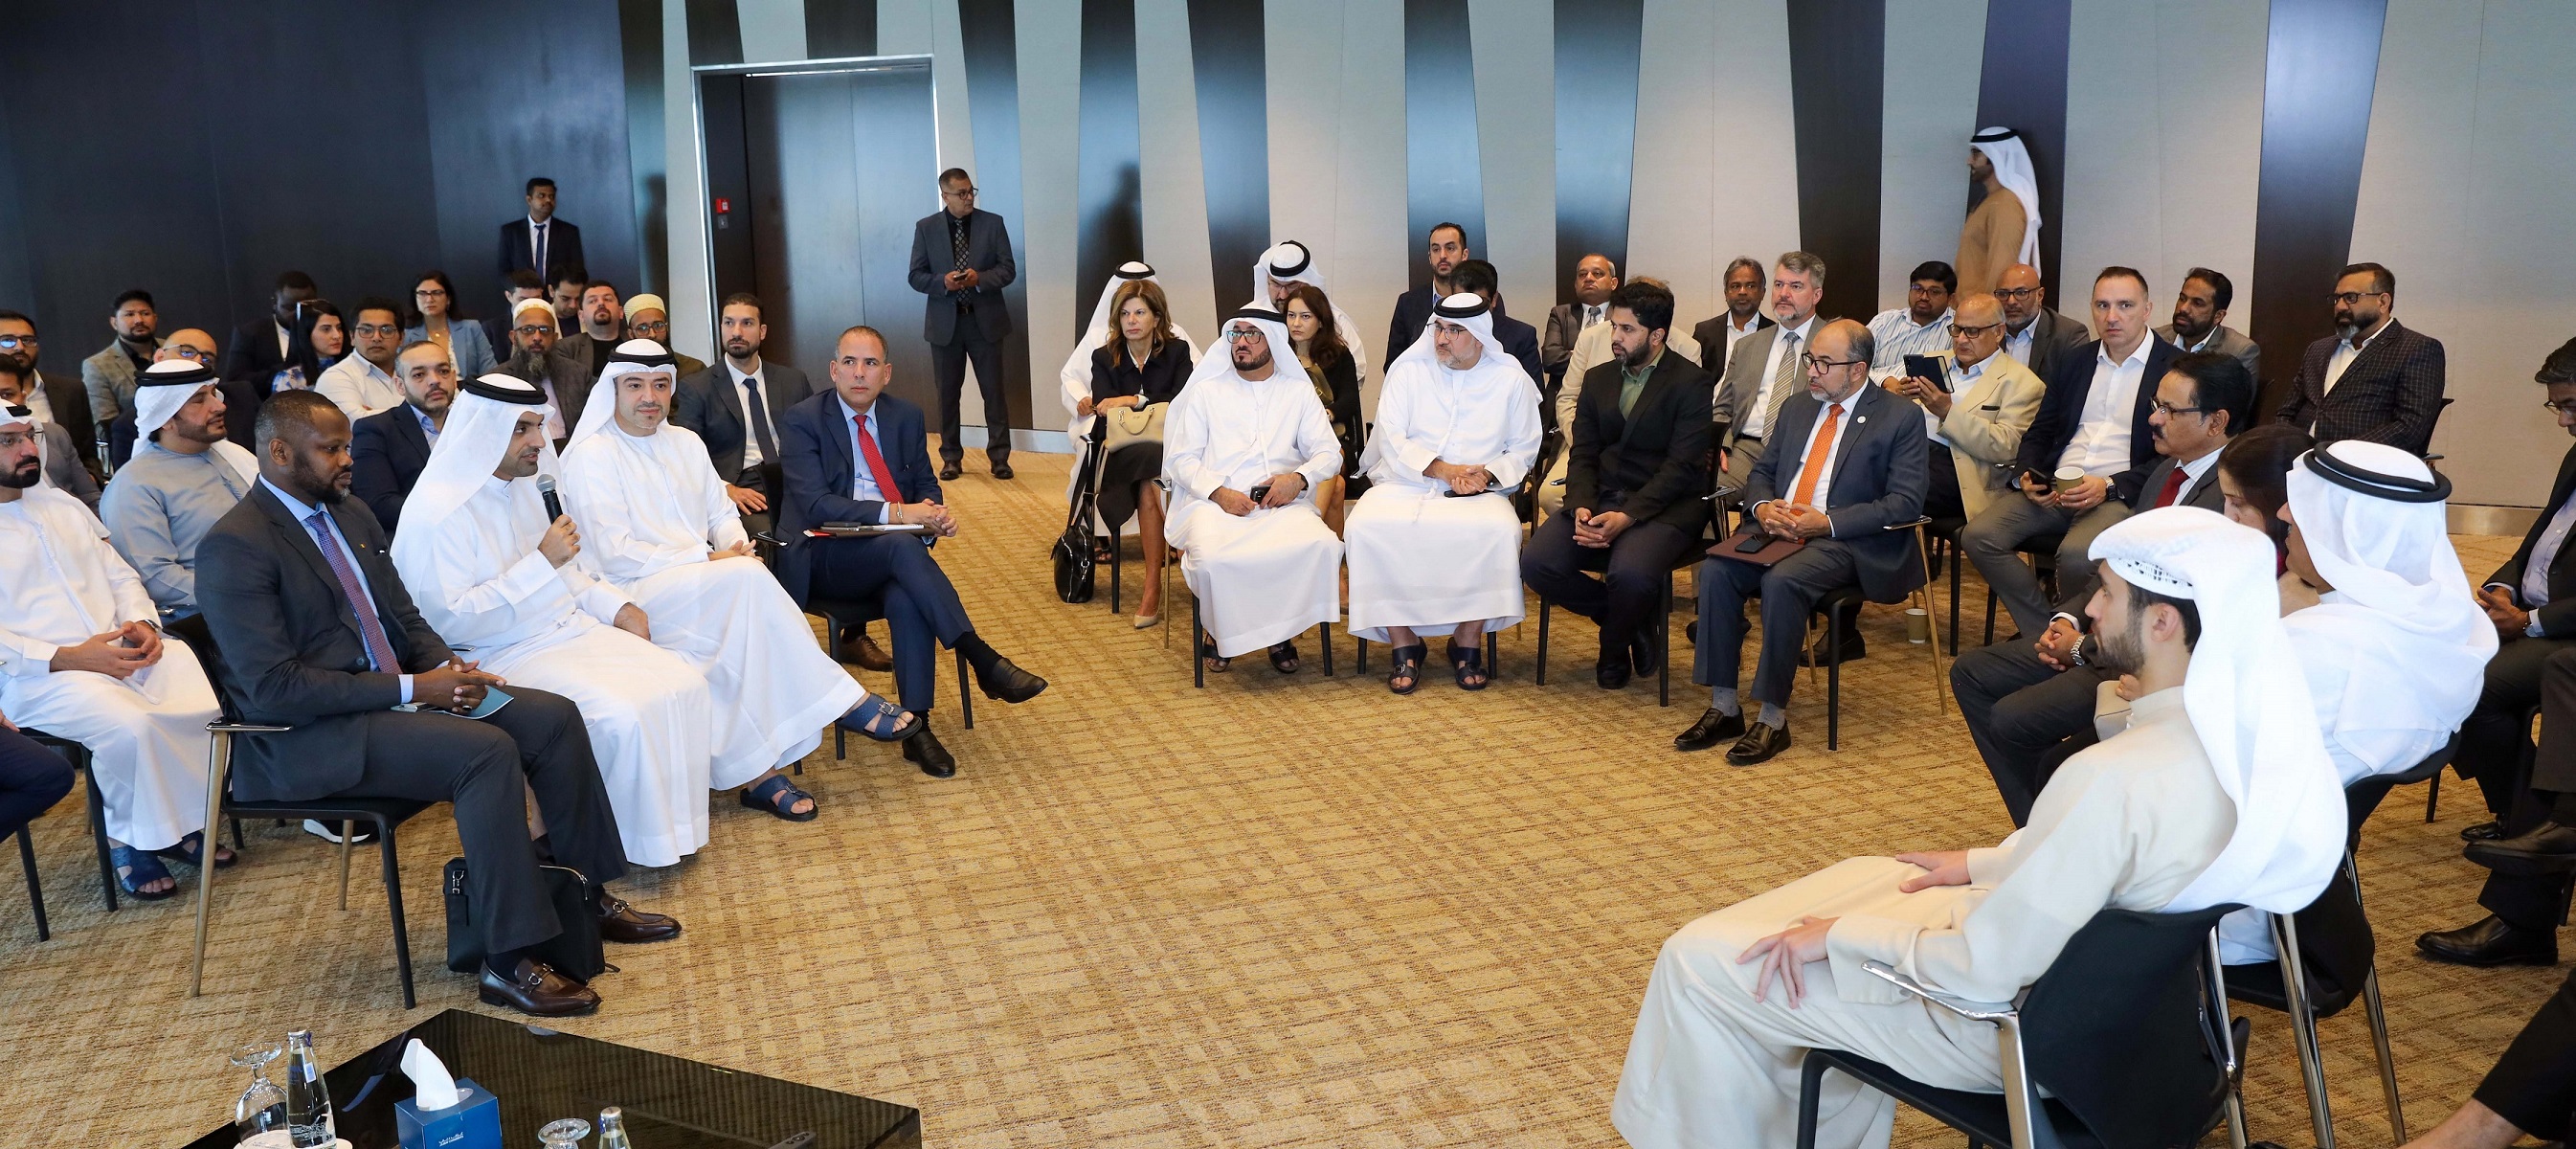 غرفة دبي الدولية تستضيف حدث “In Focus” لدعم توسع الأعمال في دبي إلى المغرب والسنغال